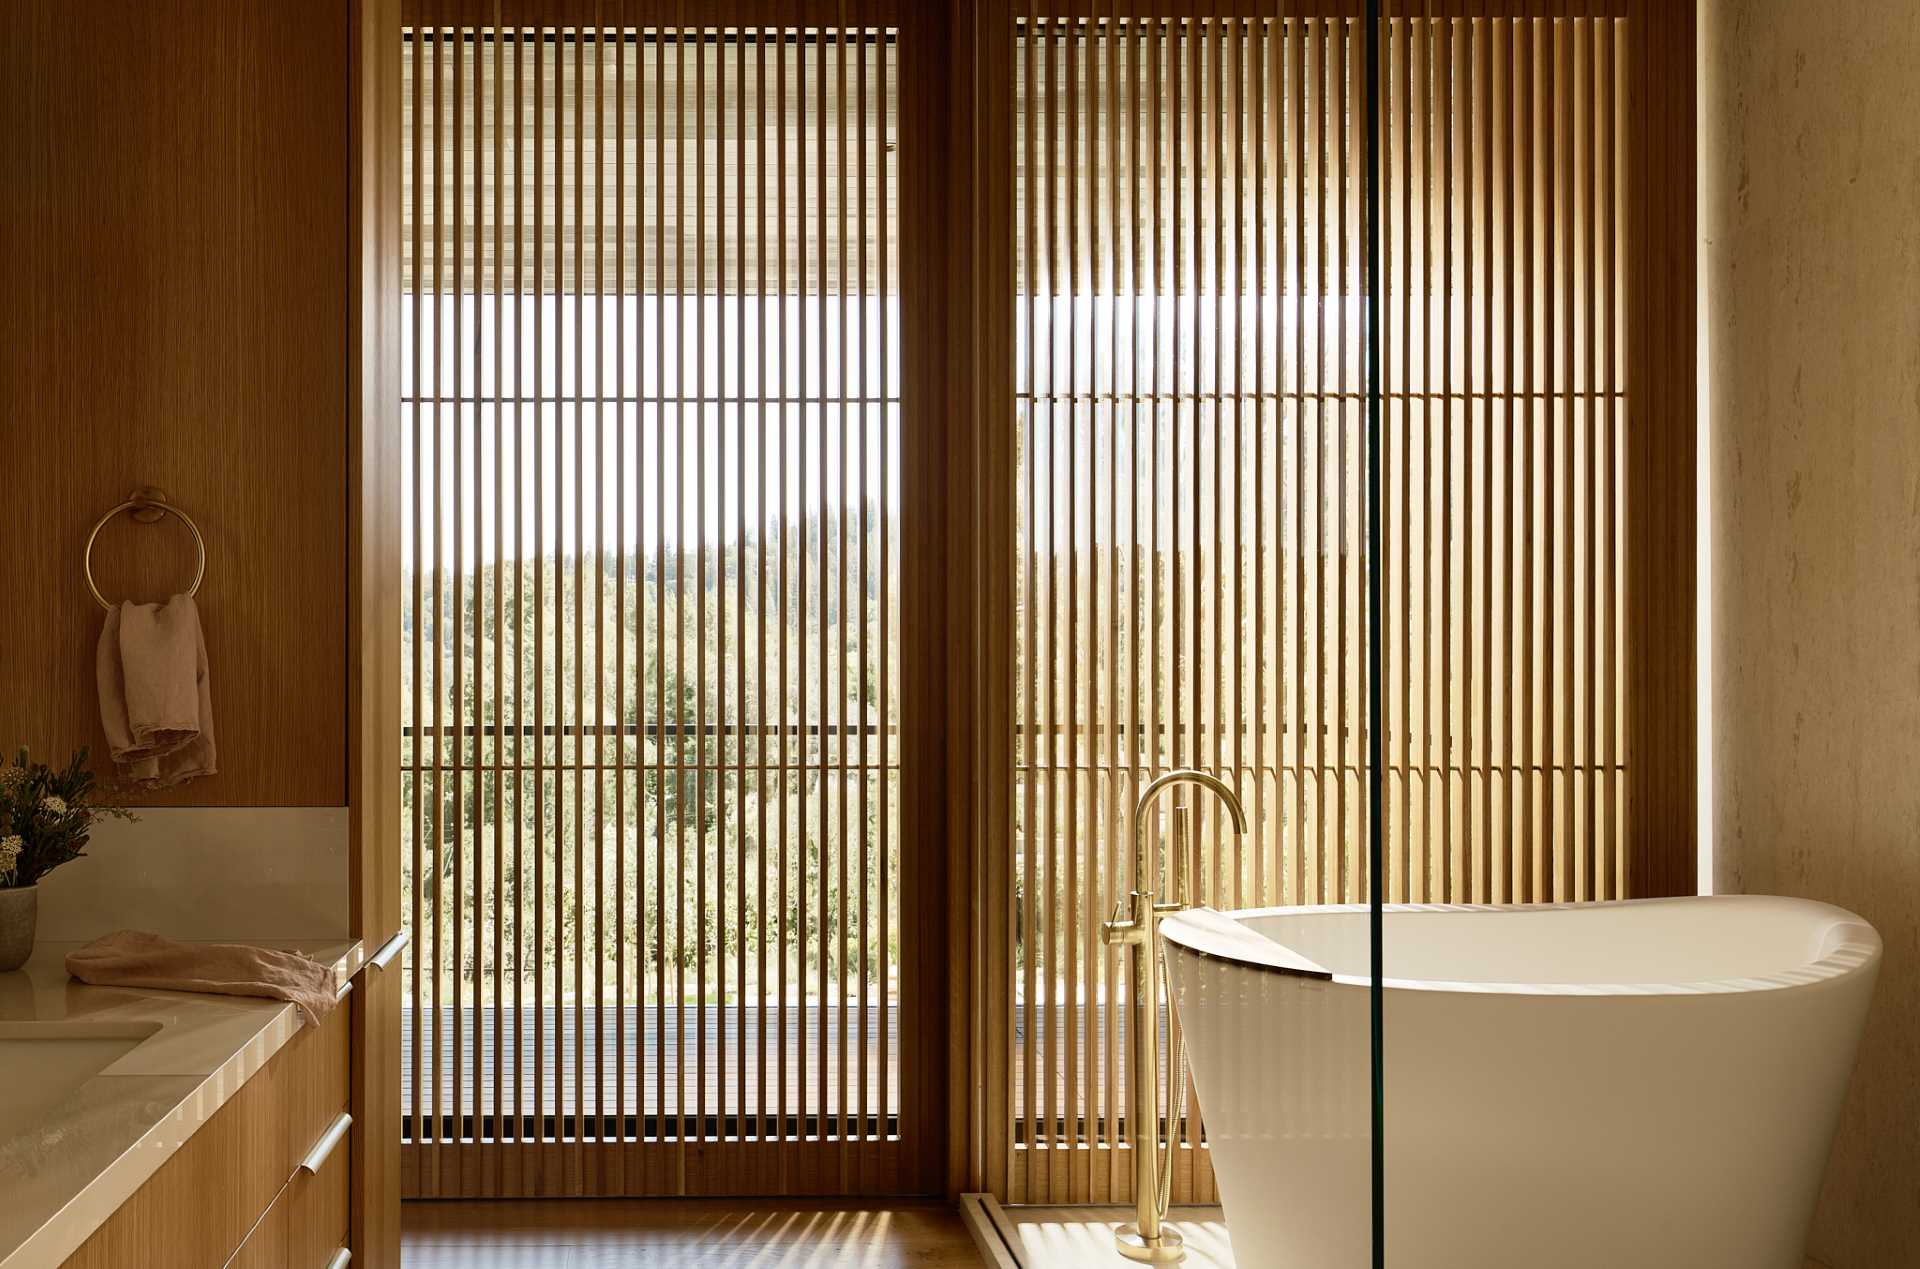 در این حمام، یک وان حمام مستقل در جلوی پنجره ها قرار گرفته است، در حالی که تخته های چوبی حریم خصوصی را فراهم می کنند.